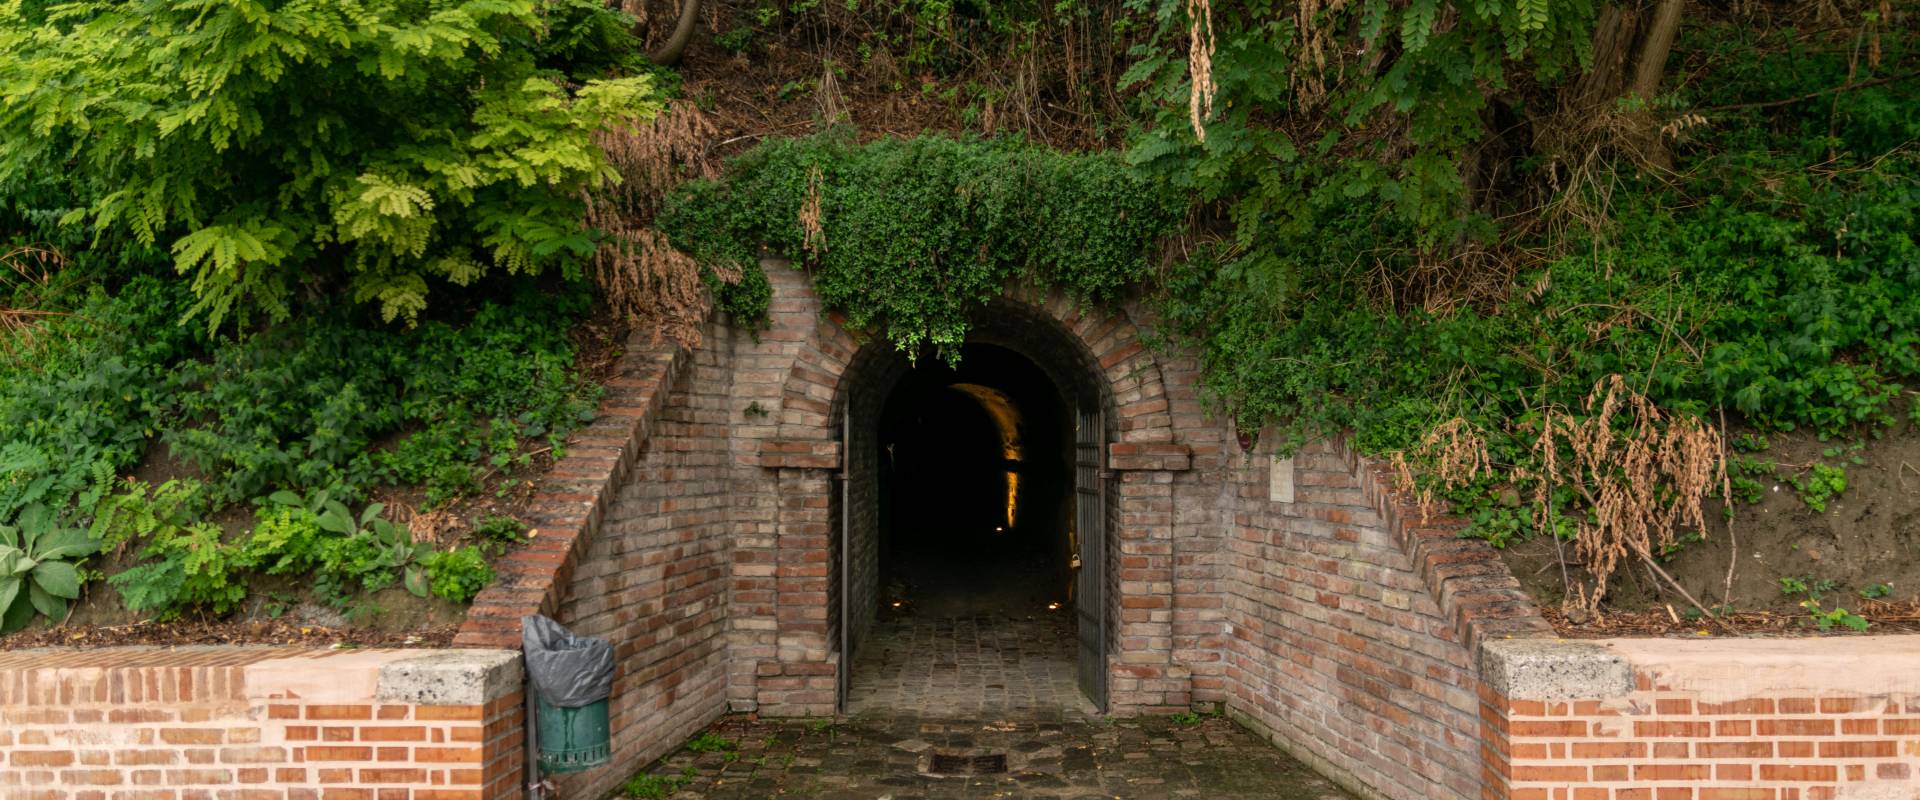 Ingresso tunnel antiaereo sotto al Castello Malatestiano di Longiano photo by Matteo Panzavolta